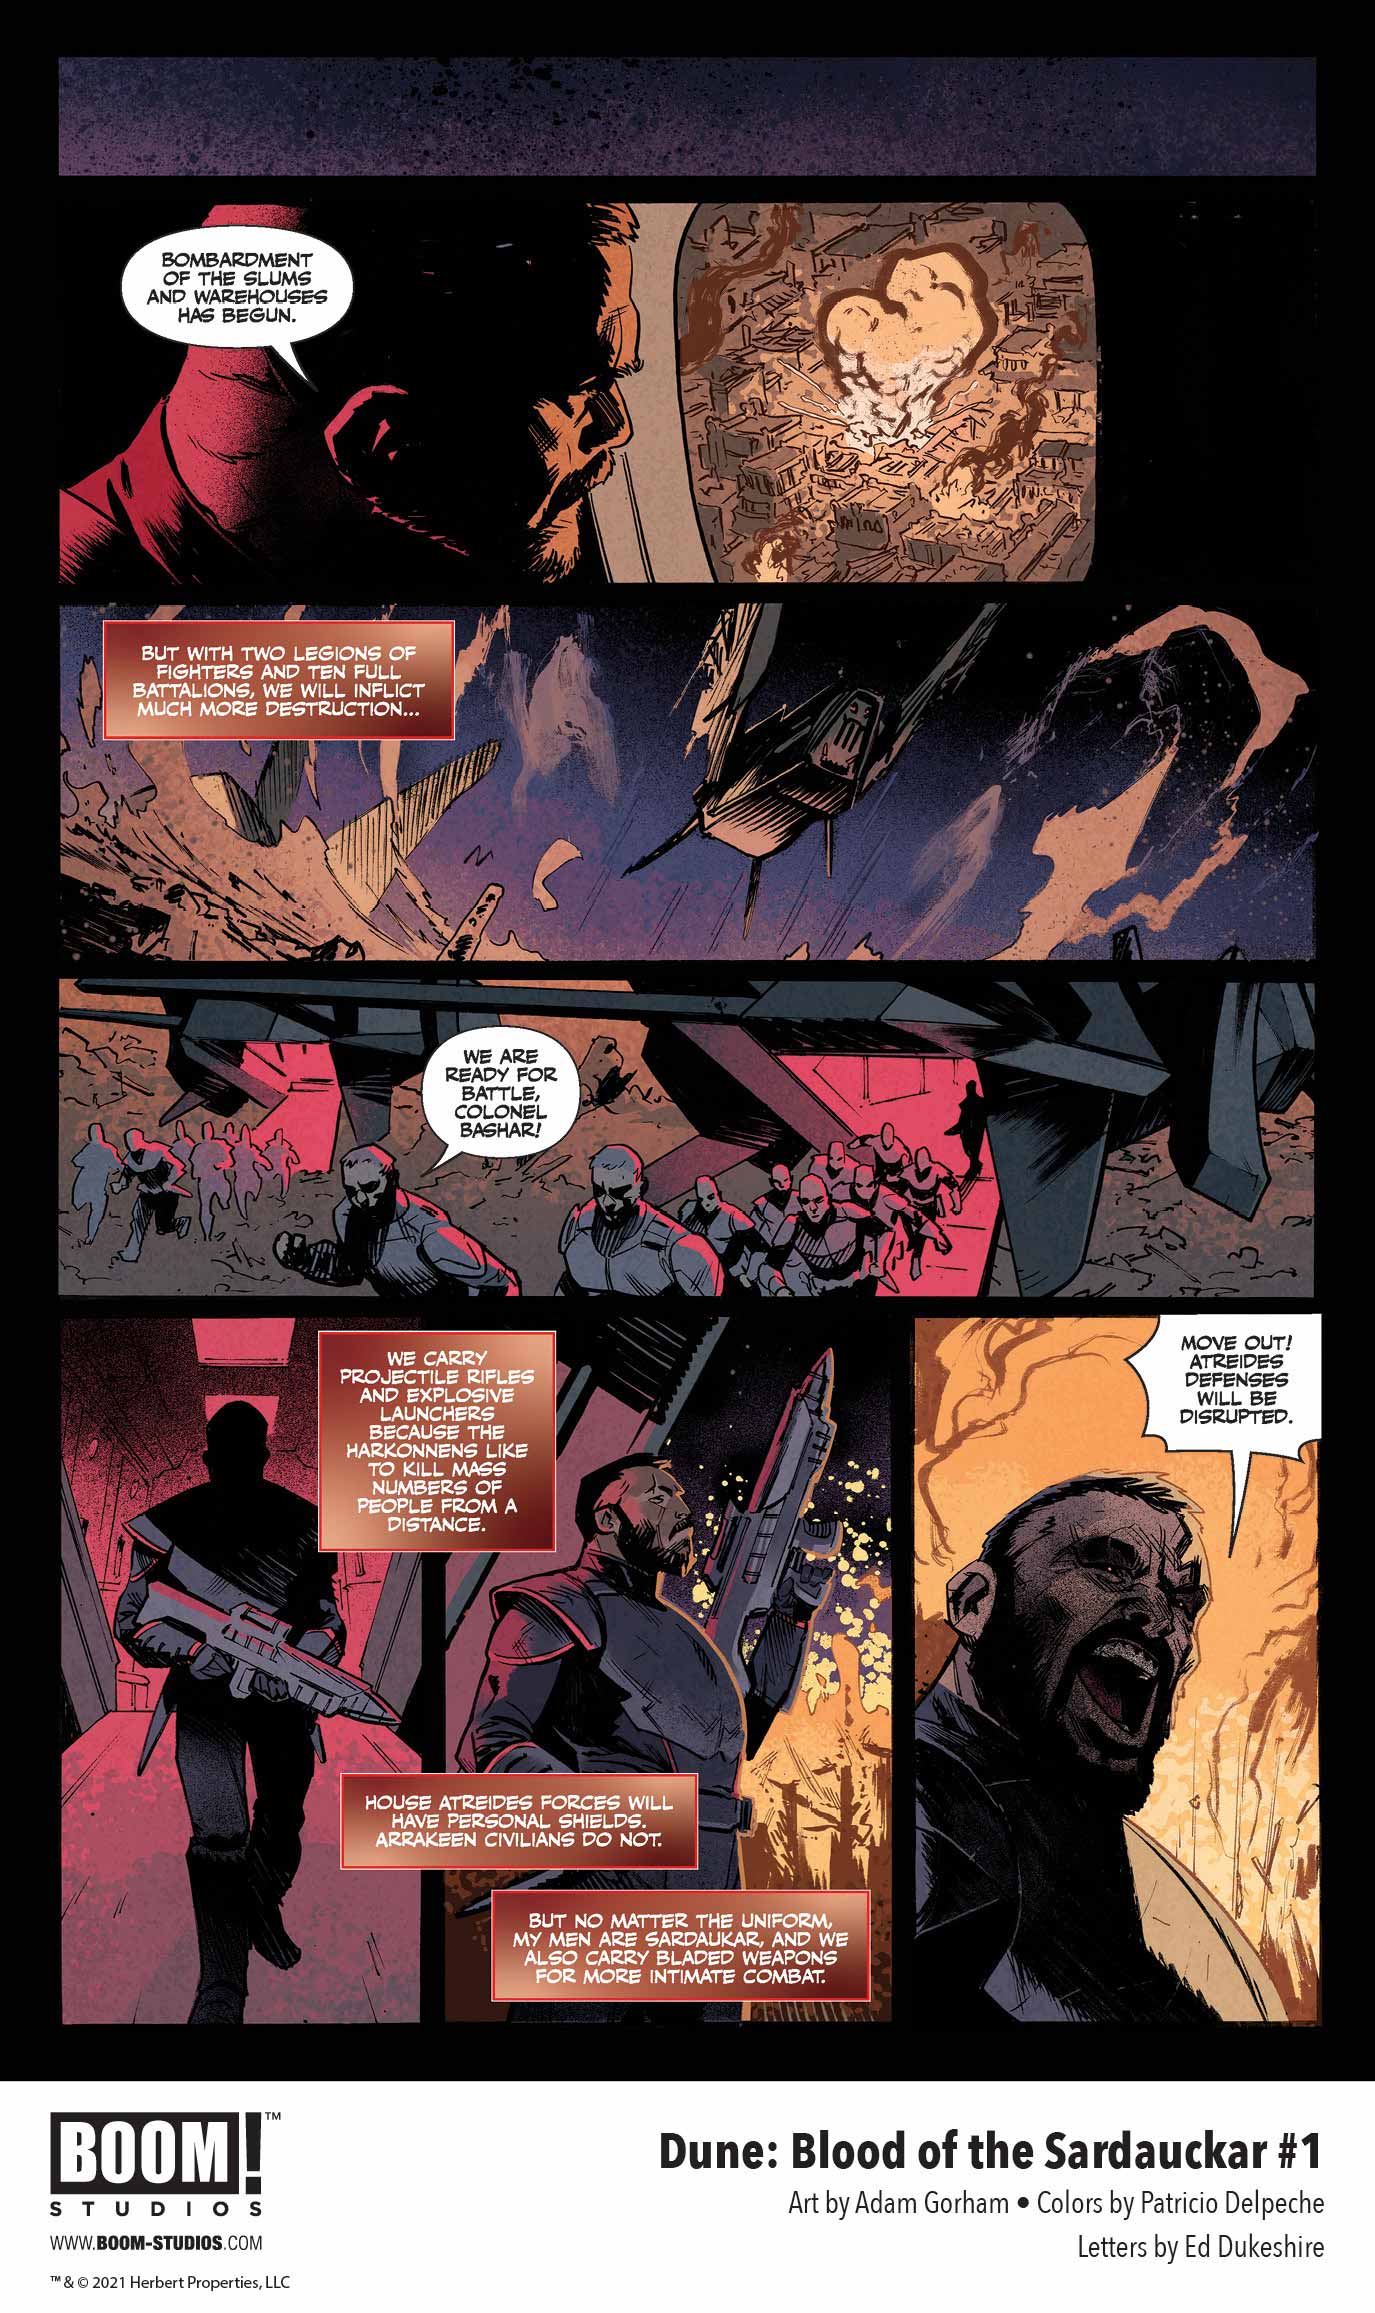 Dune: Blood of the Sardaukar comic book, preview page 3.